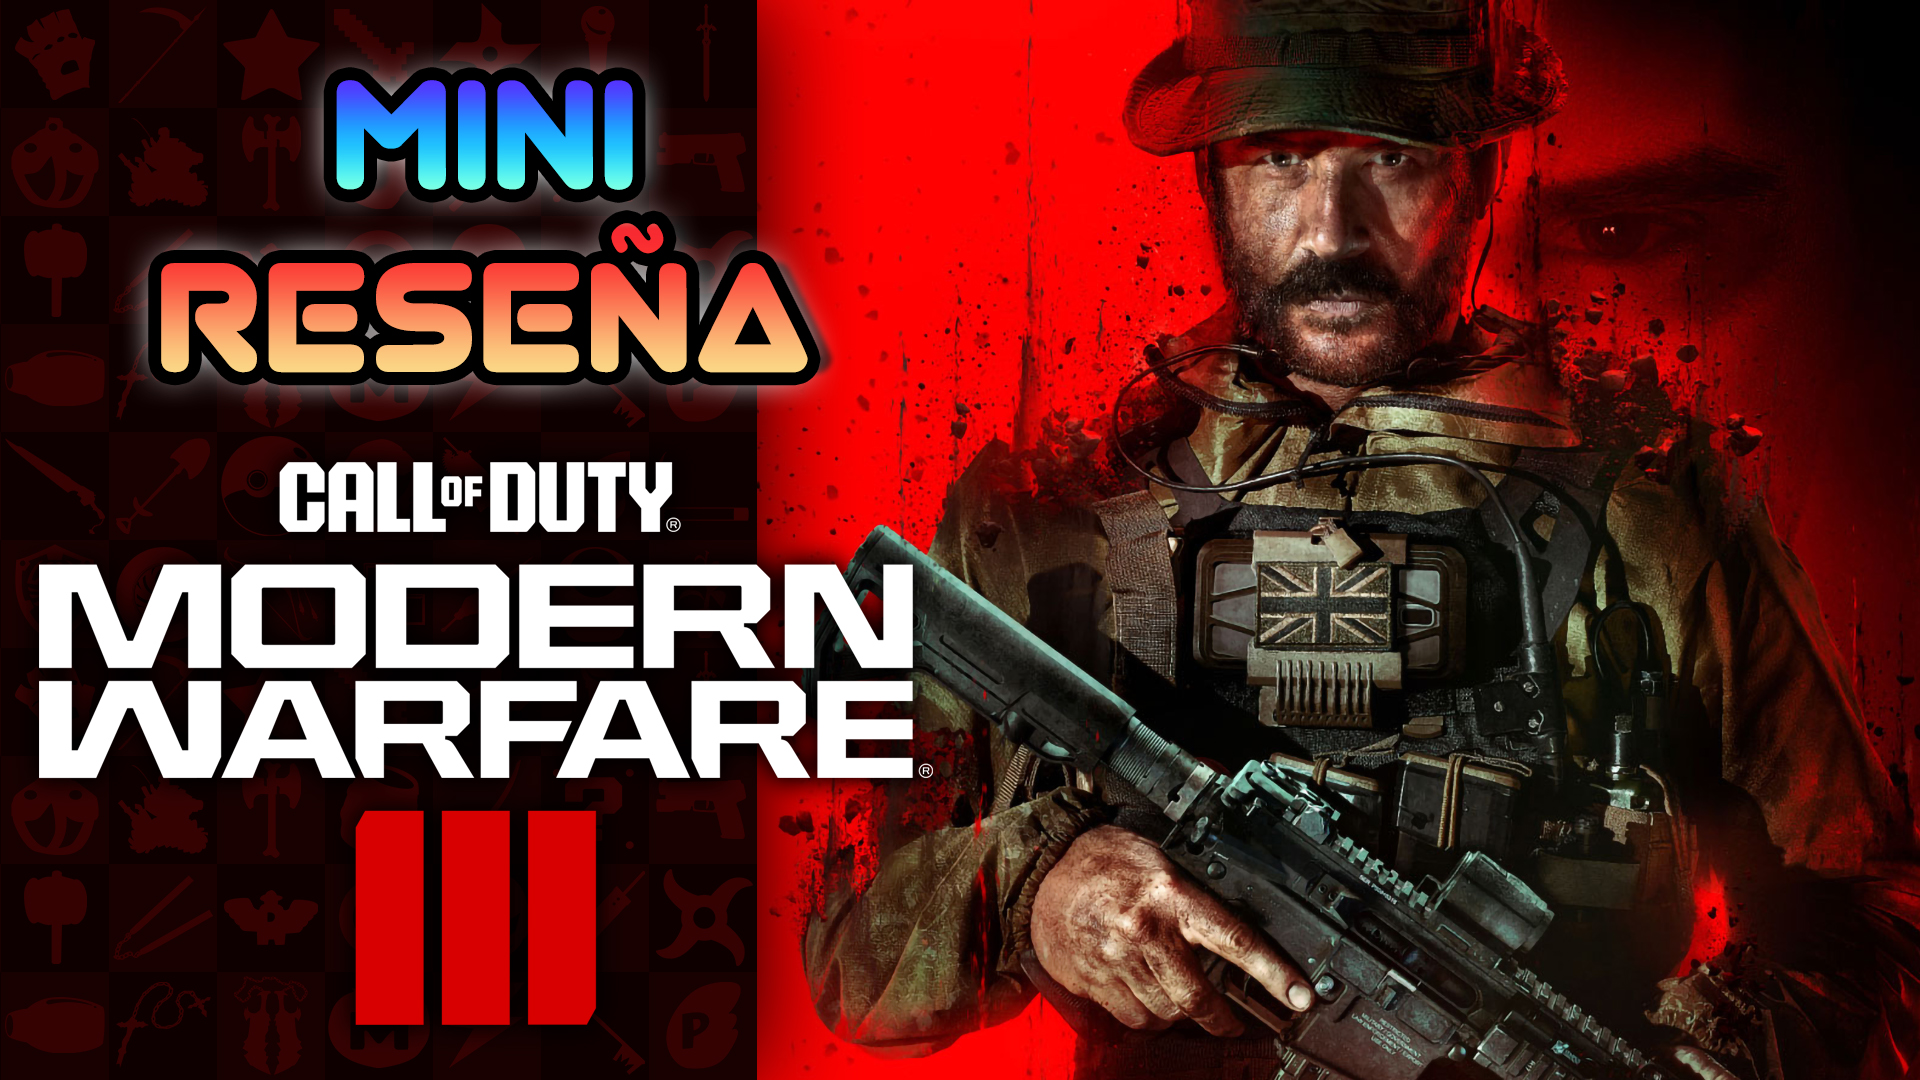 Mini Reseña Call of Duty: Modern Warfare 3 – Apresurado y a medias